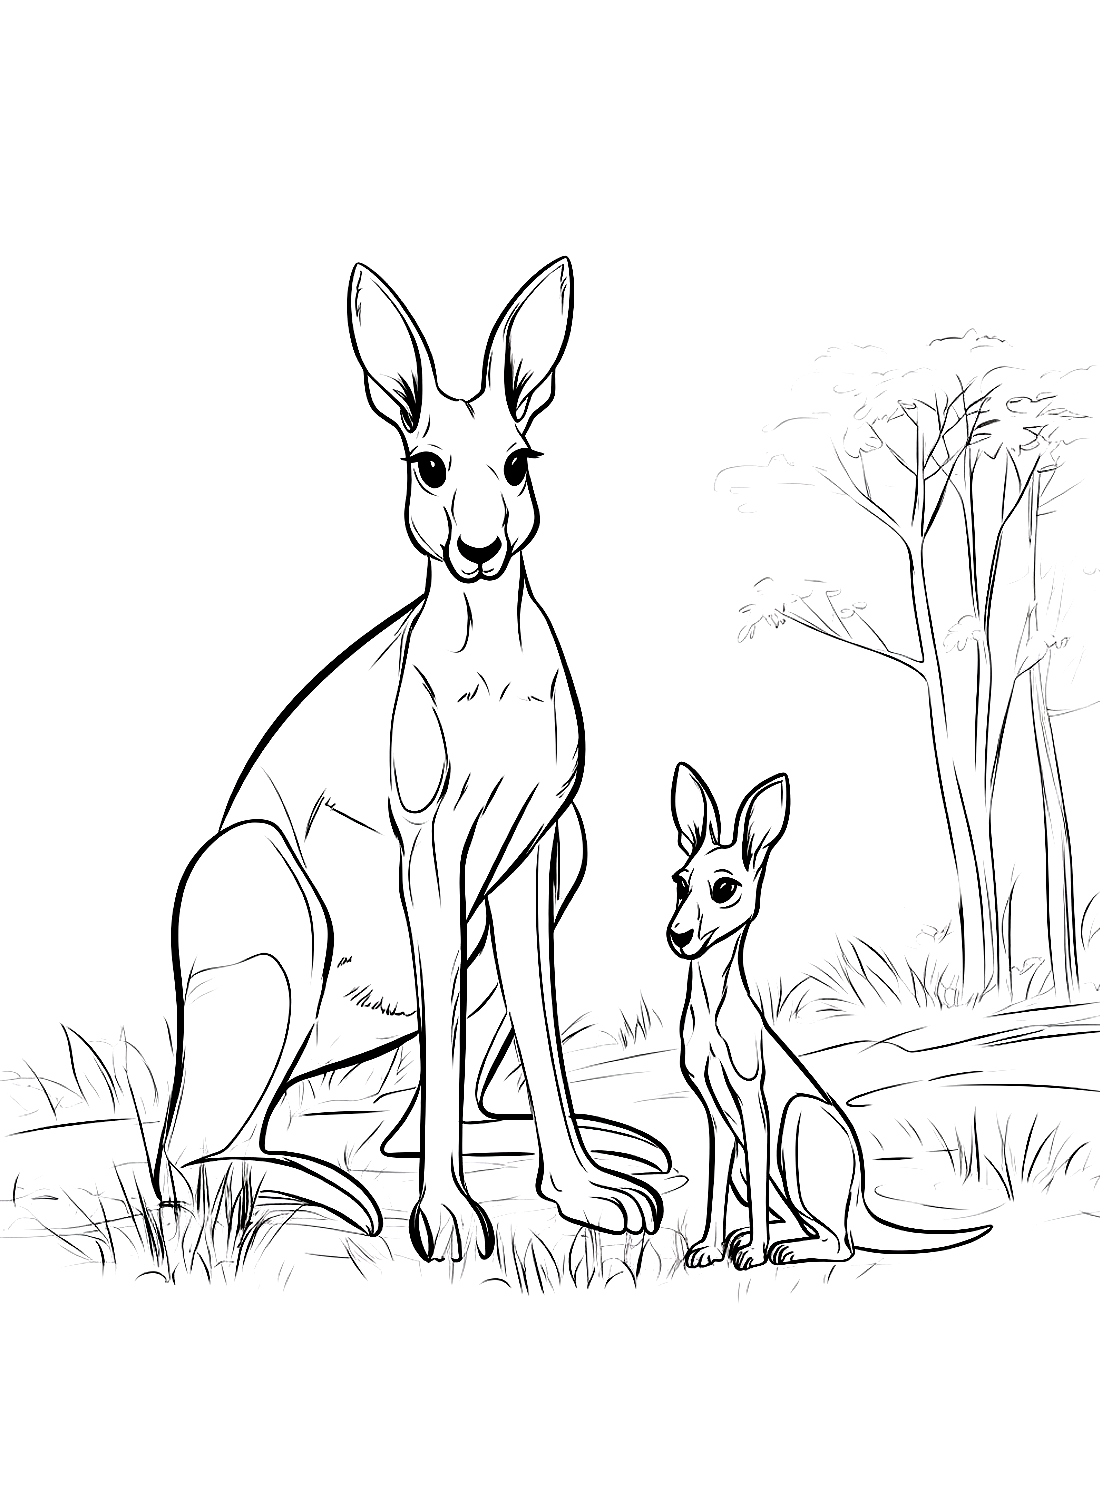 Two Red Kangaroos from Kangaroo